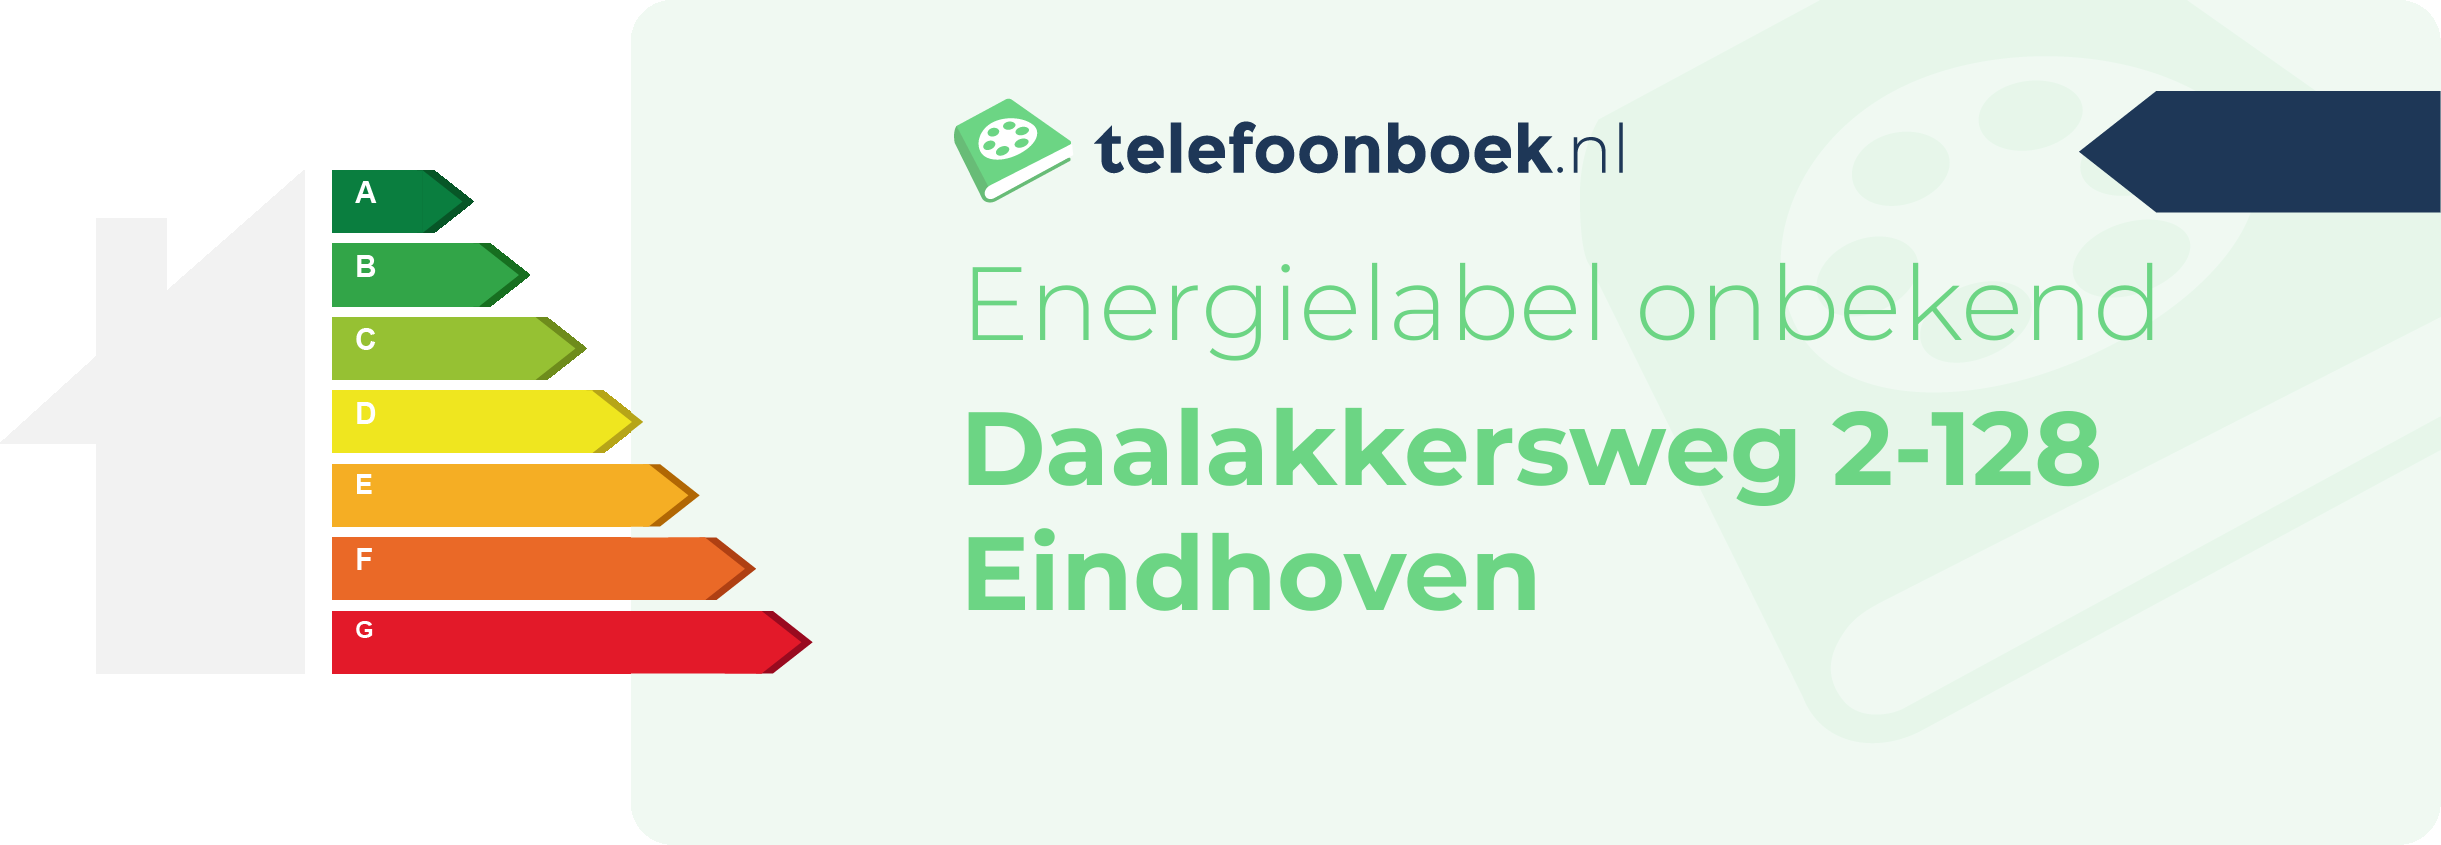 Energielabel Daalakkersweg 2-128 Eindhoven